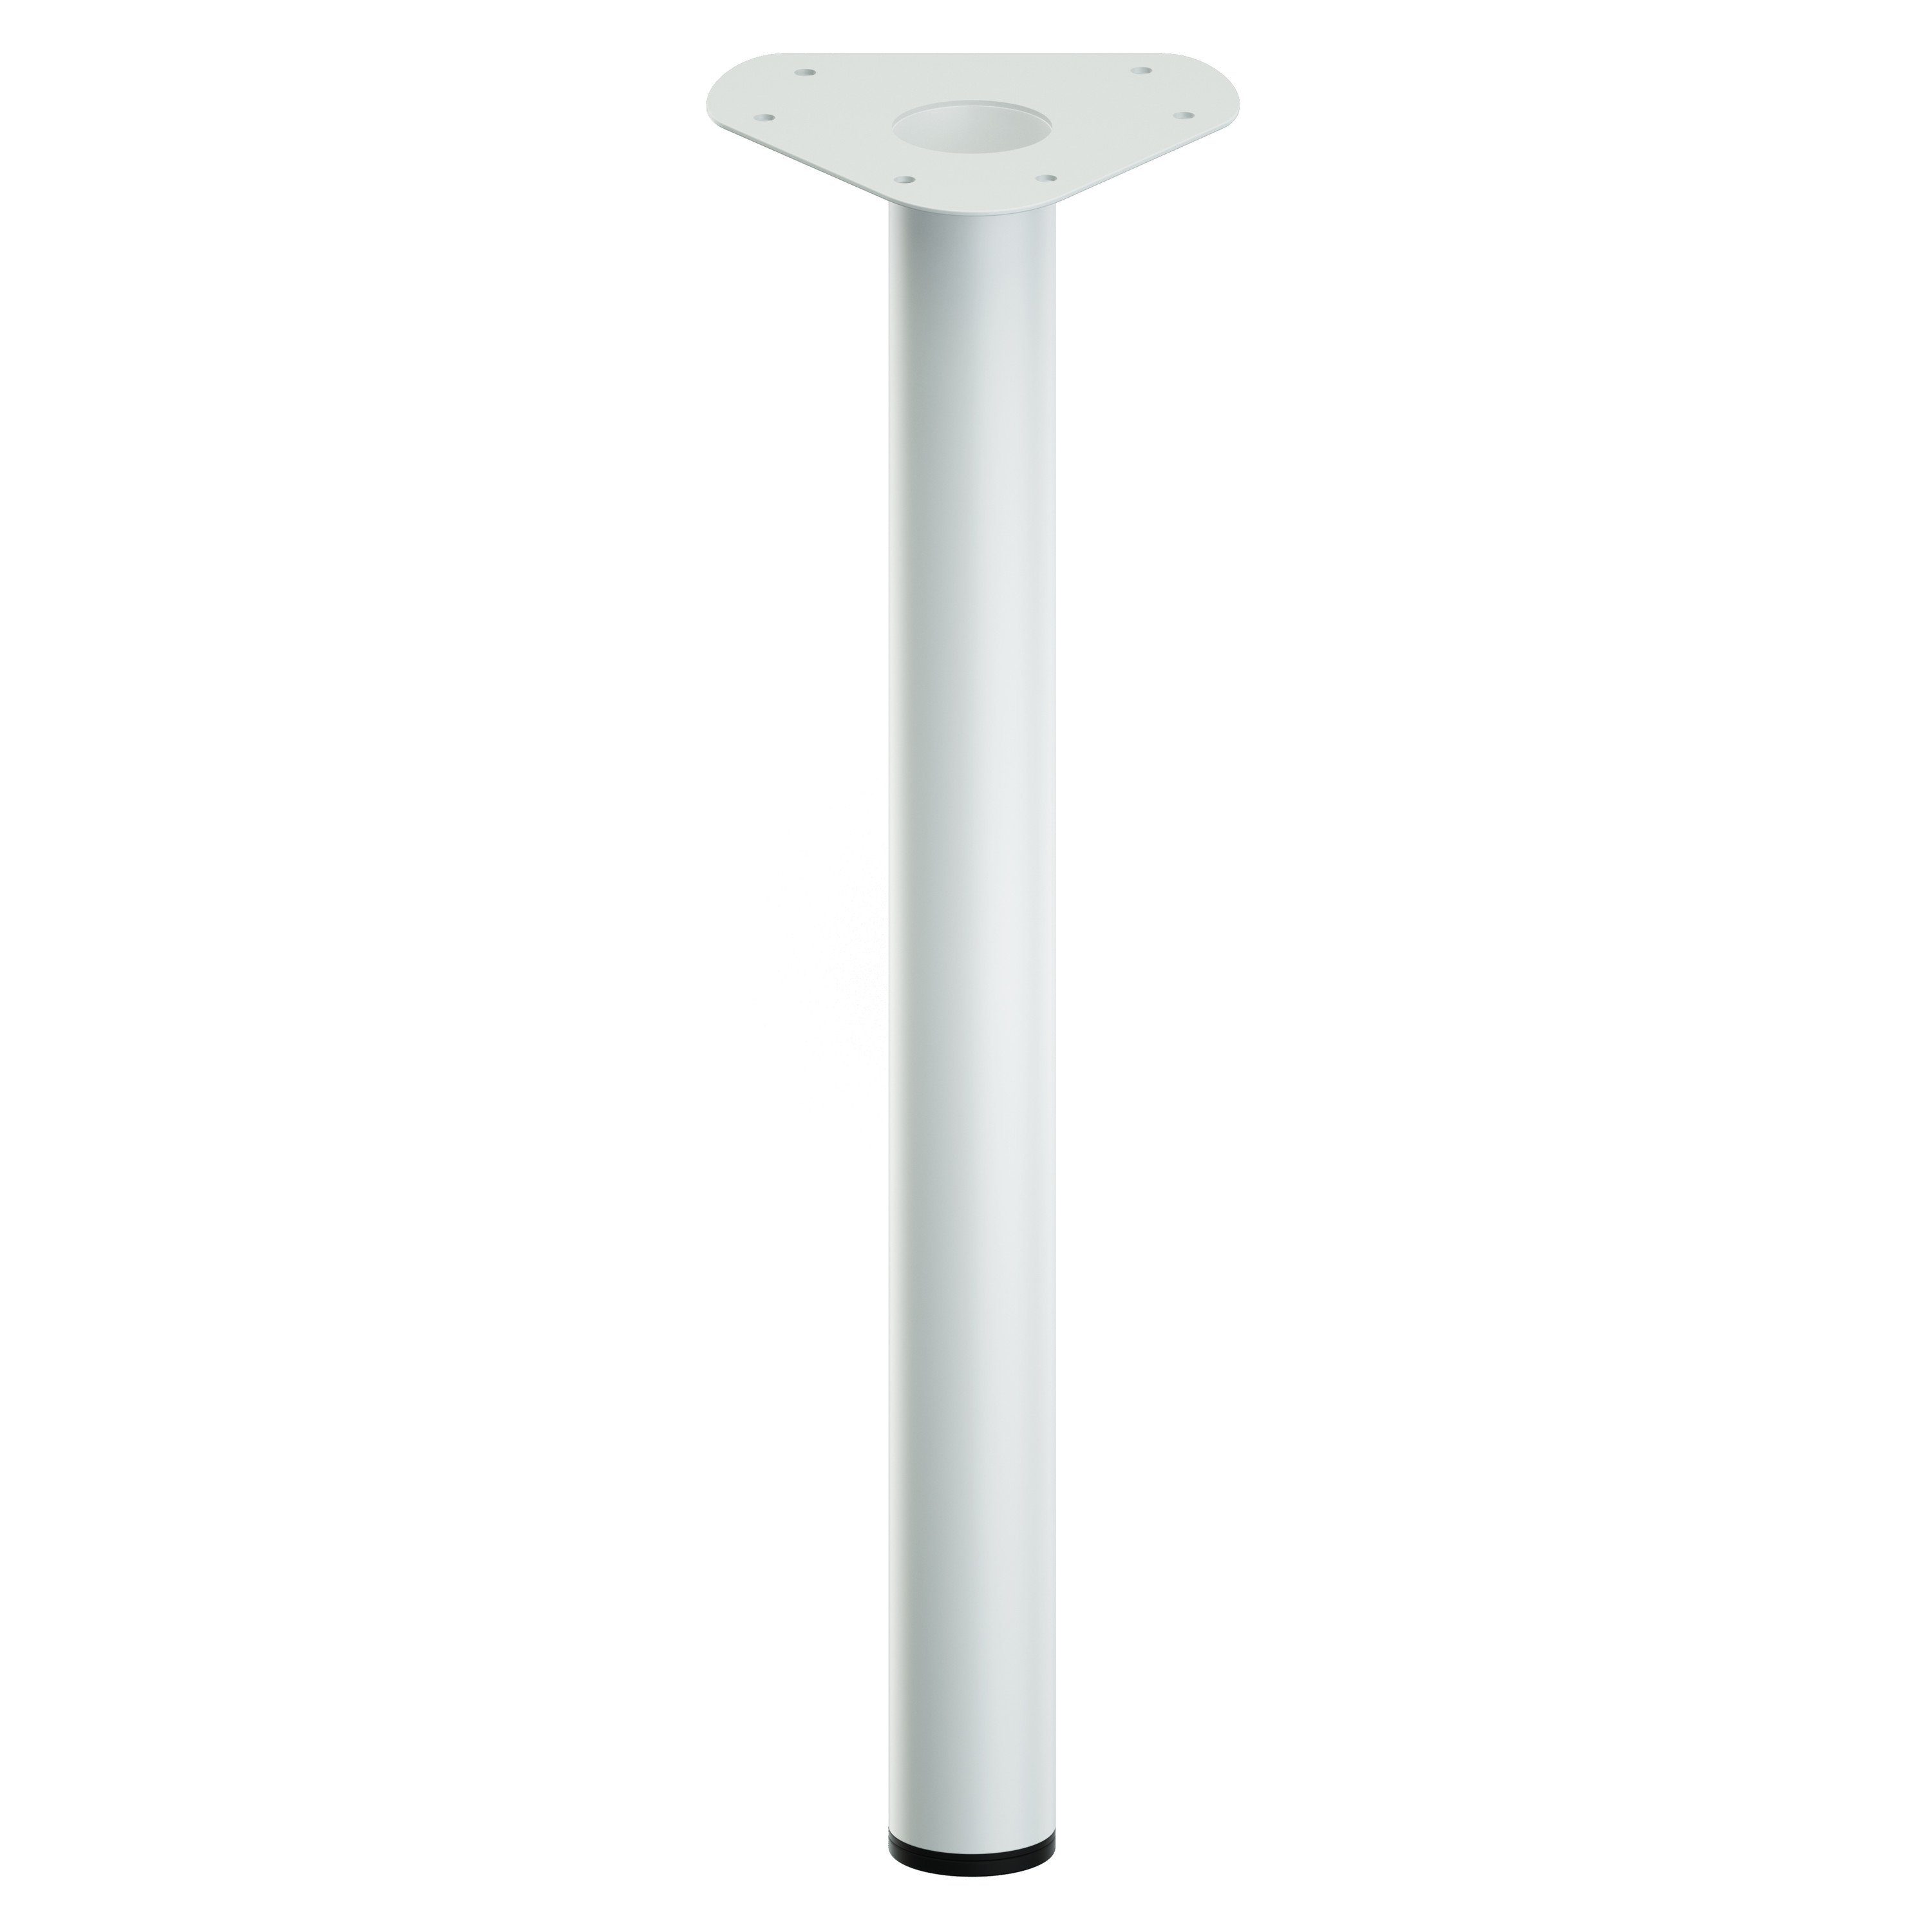 ib style - integrierten Tischbein mit Ø Tischfüße Tischbein cm, mm Möbelfüße - Stellfuß 60 Farbe:Weiß;Länge:40